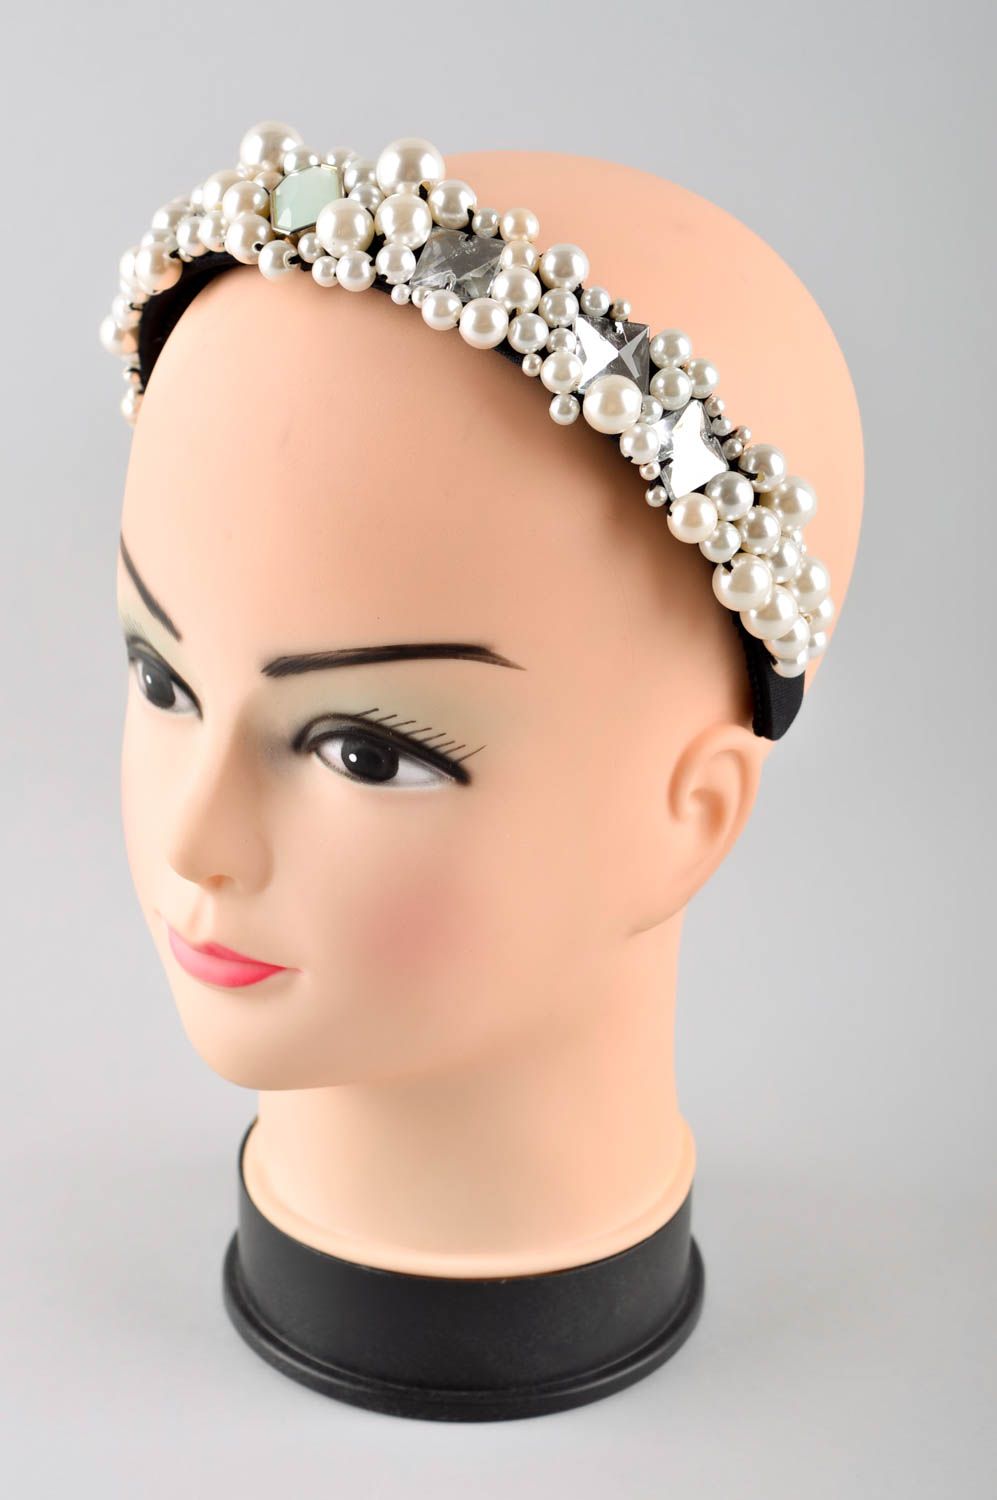 Аксессуар для волос ручной работы обруч на голову женский аксессуар модный фото 1